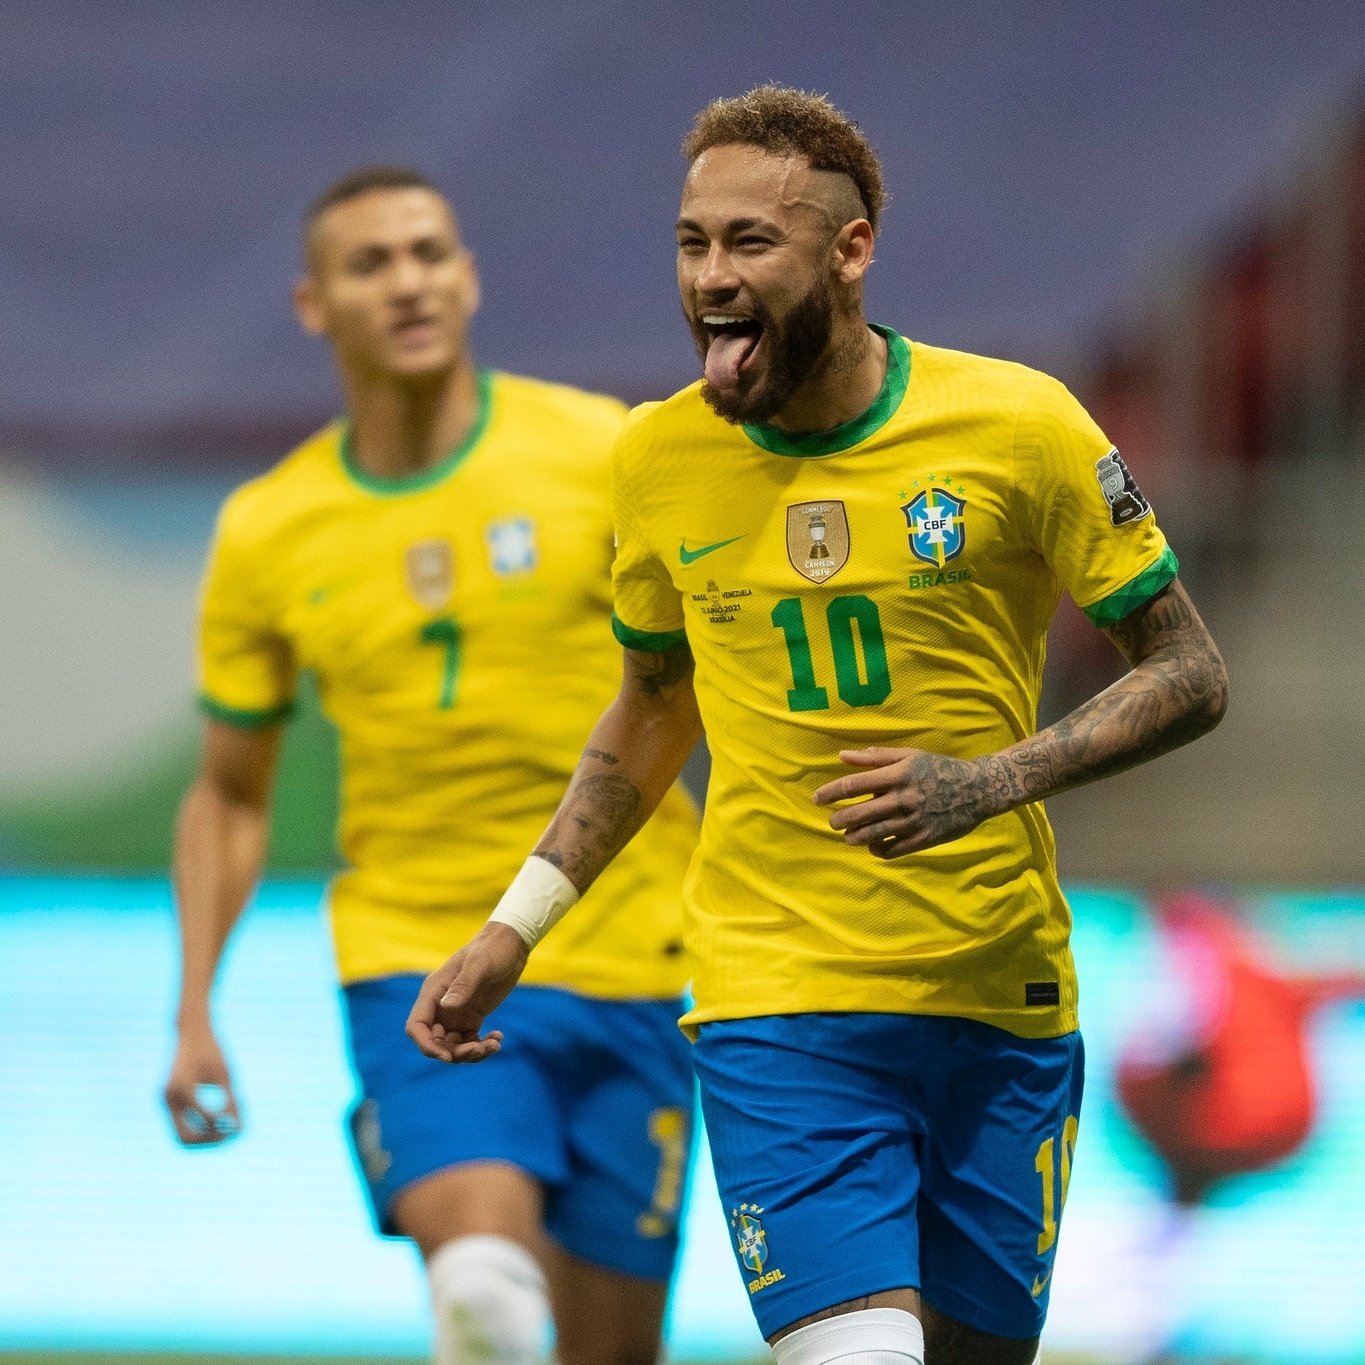 Os 5 melhores jogadores brasileiros pós-Pelé